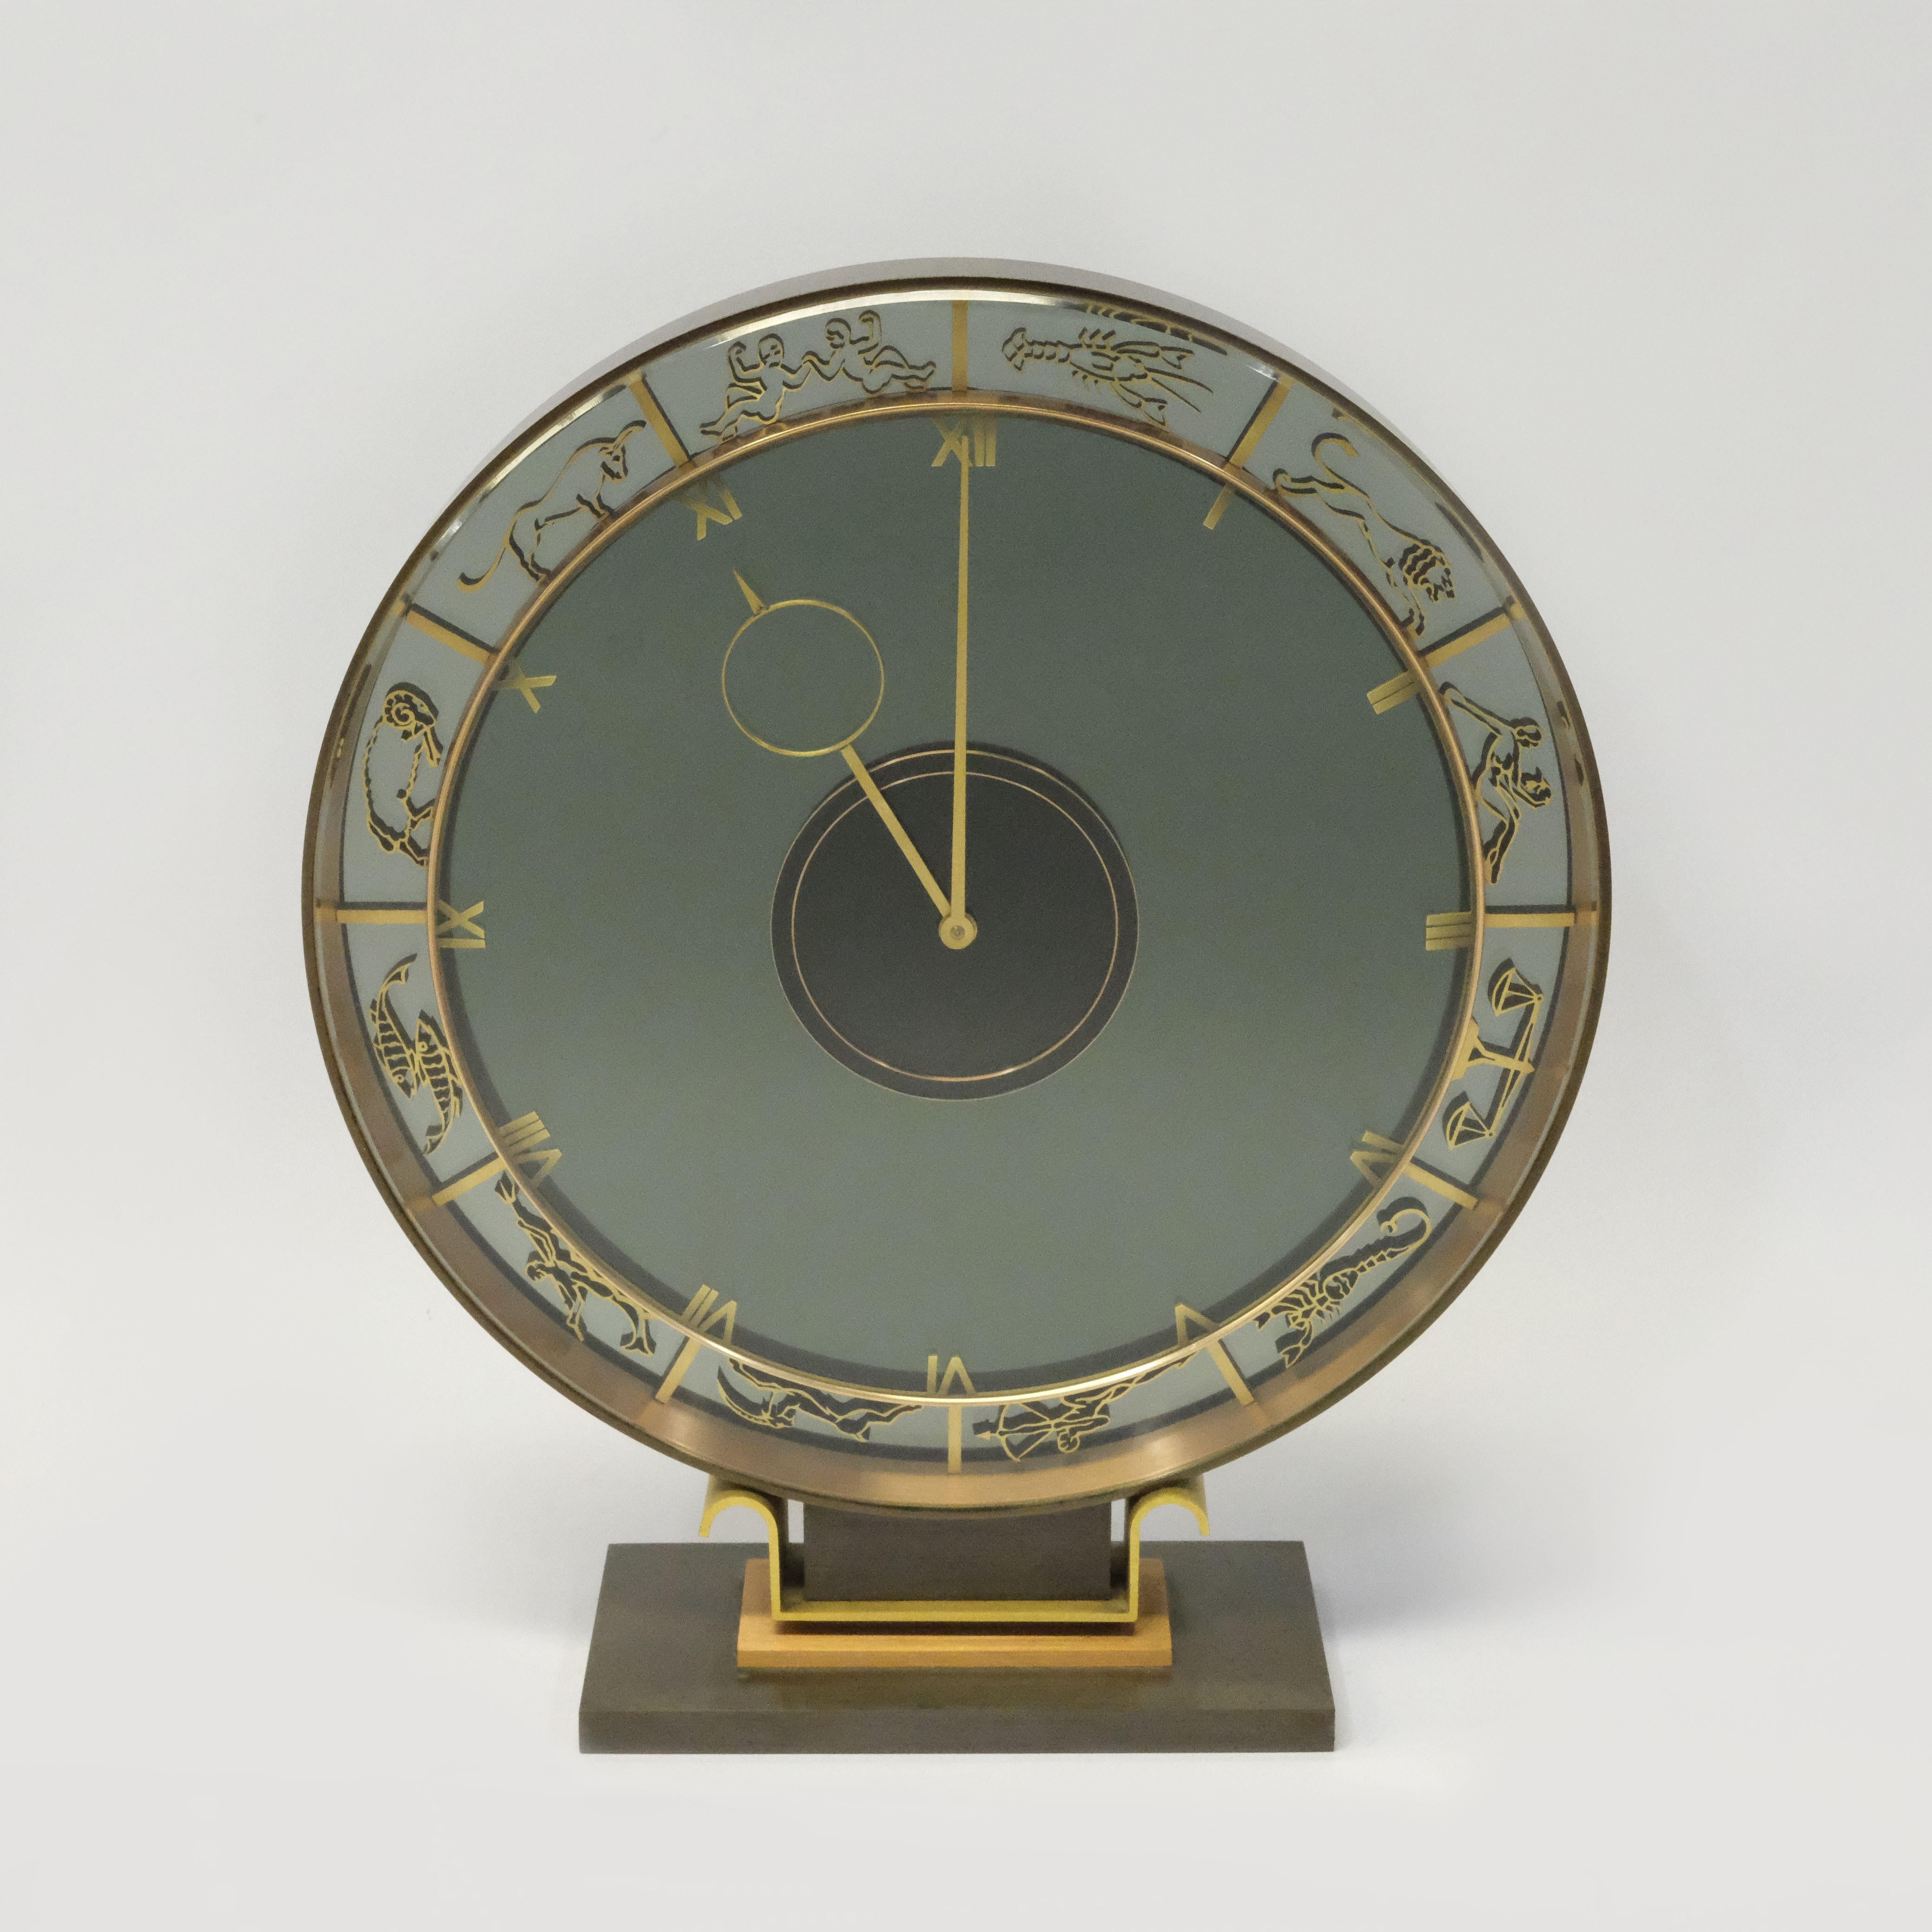 Eine ungewöhnliche Art Deco Kienzle, ein Messing, Kupfer, patiniert, und Glas 8-Tage-Mysterium Kaminsims-Uhr, das Zifferblatt zeigt die Zeichen des Zodiac, signiert Kienzle auf dem Zifferblatt. Der Entwurf von Heinrich Johannes Möller (1905-1983)